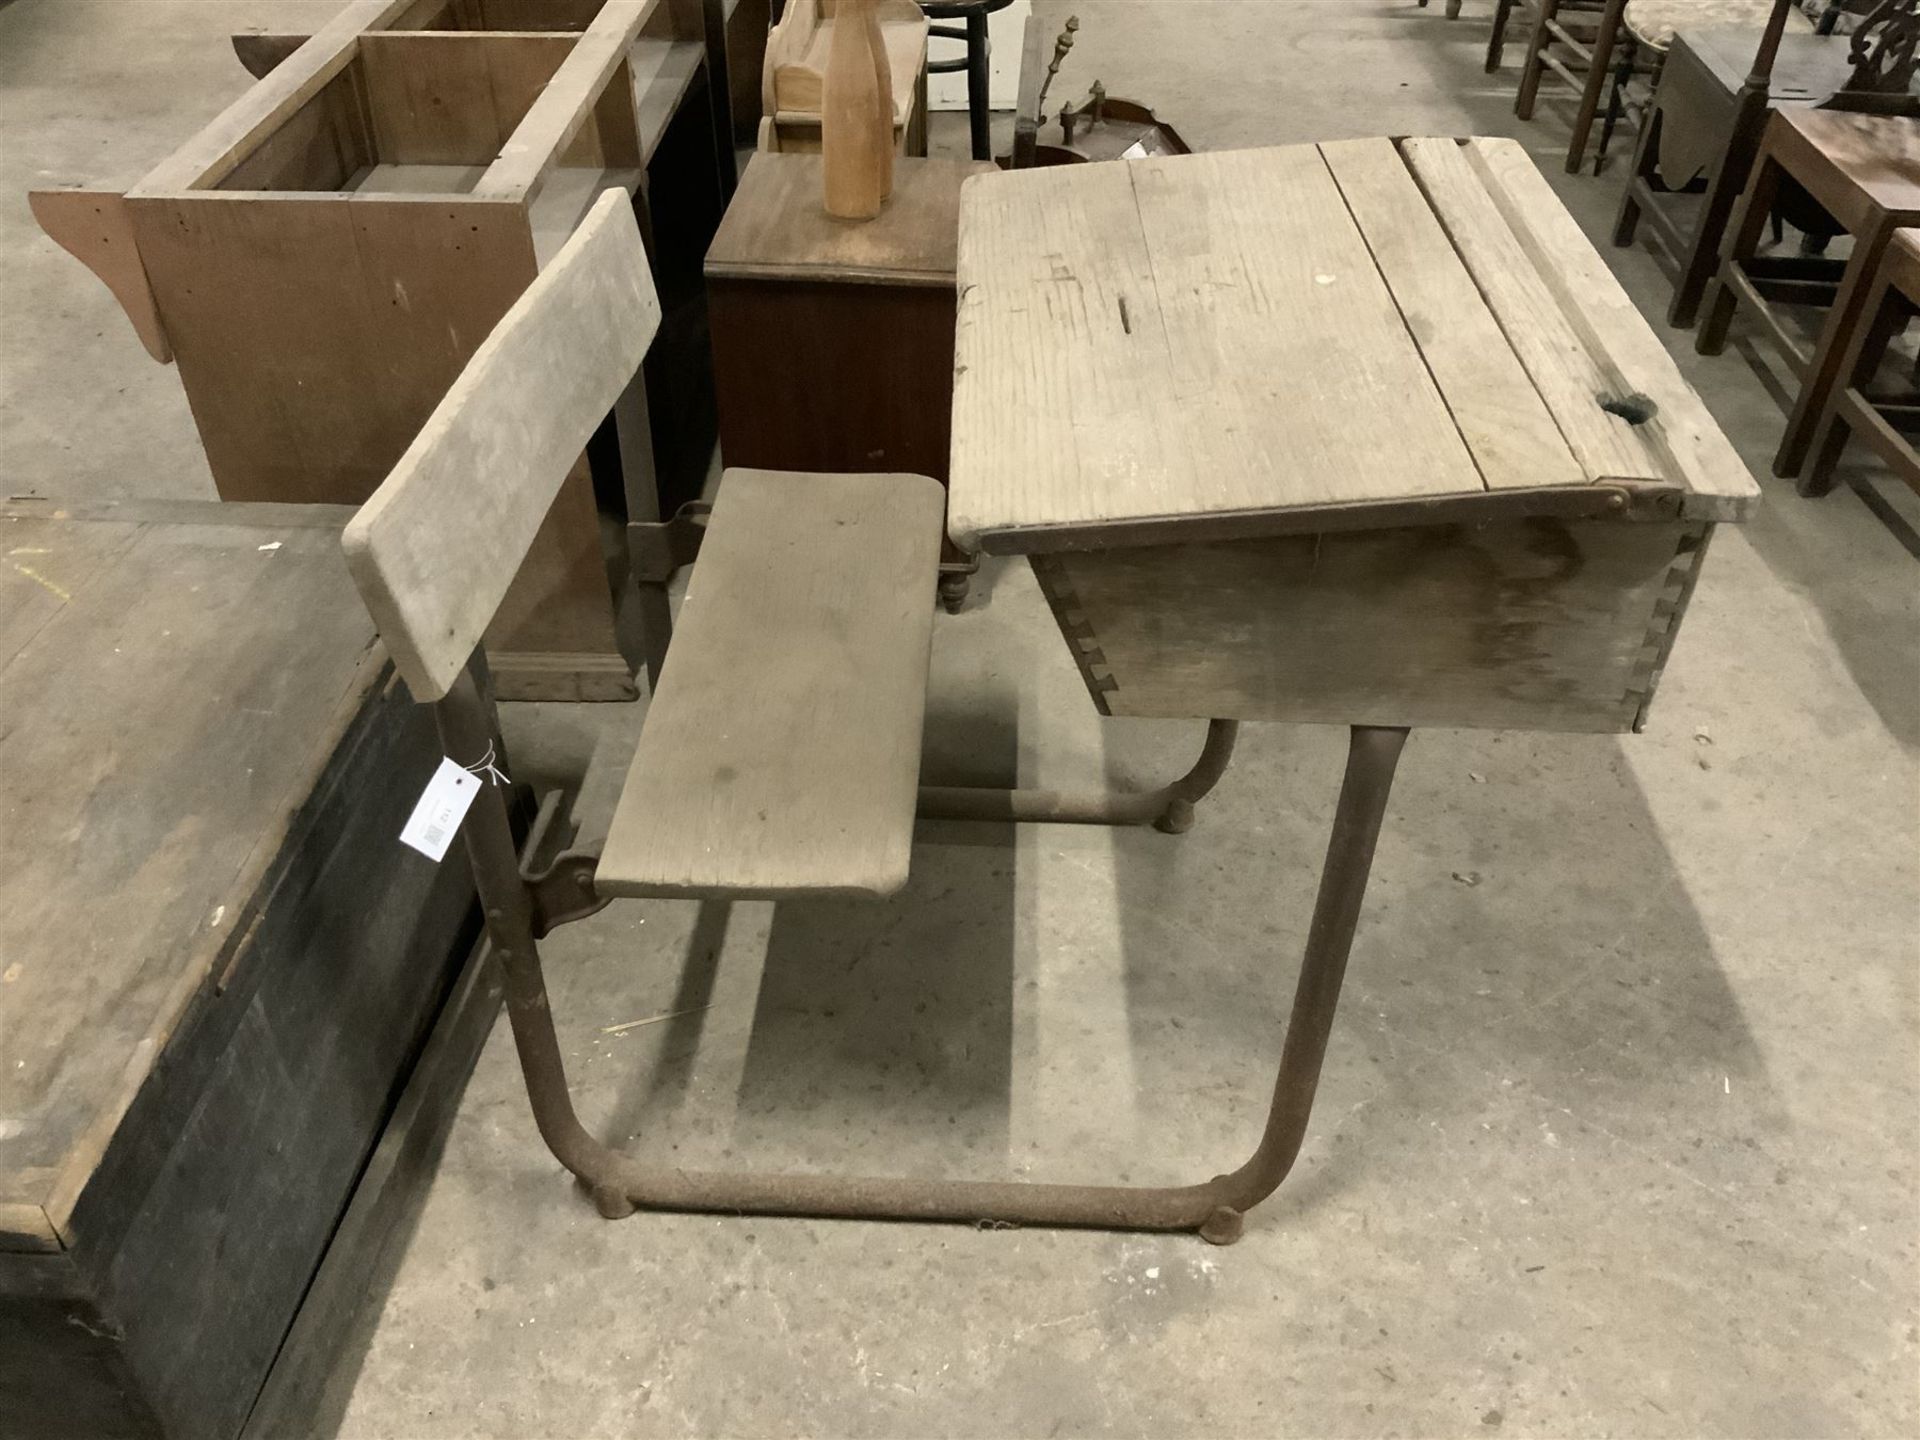 Oak and steel industrial school desk